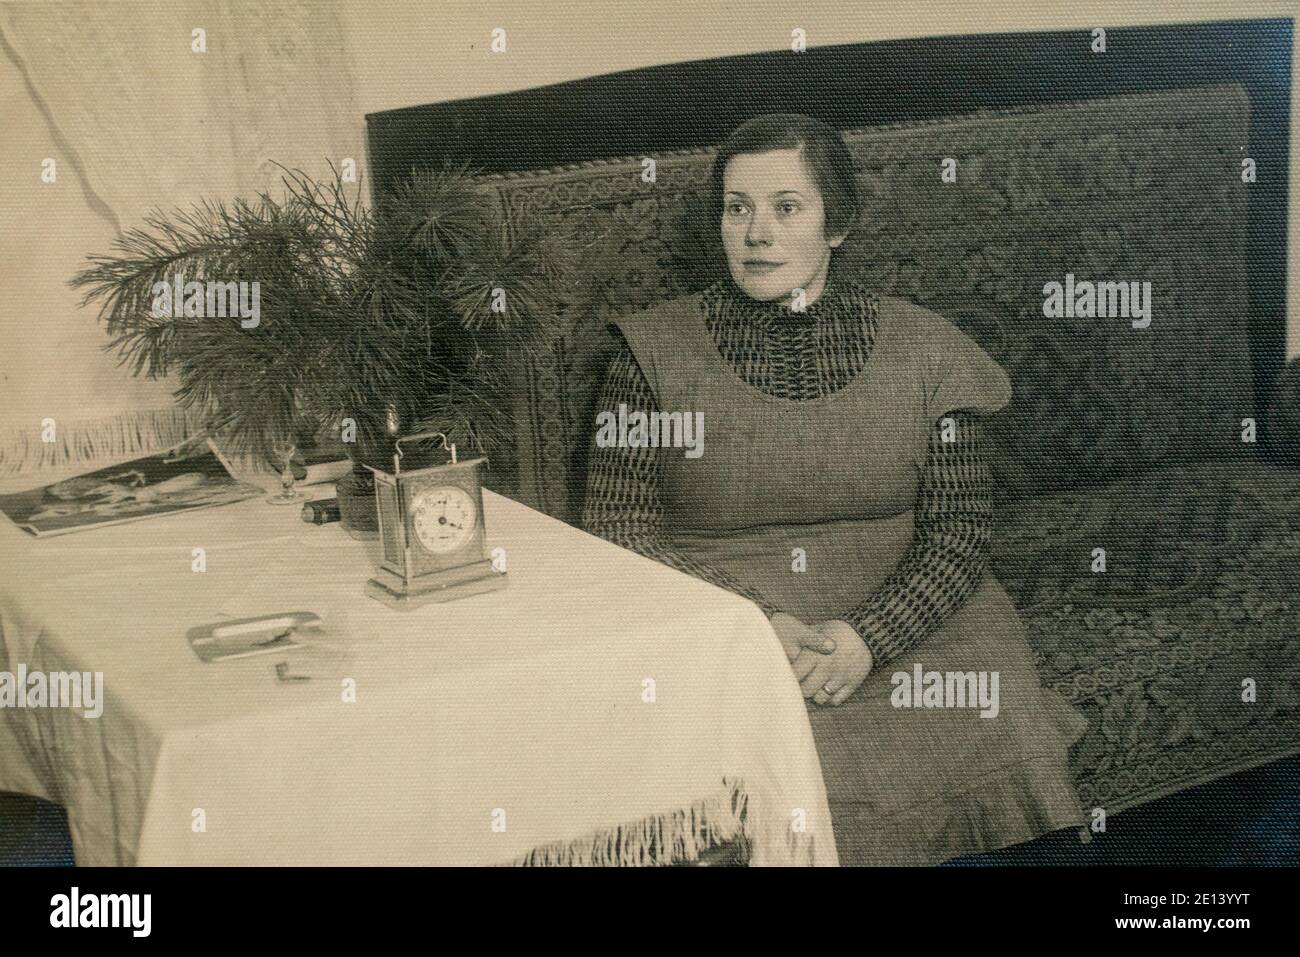 Lettland - UM 1930er Jahre: Ganzkörperporträt der Frau, die auf dem Sofa neben dem Tisch sitzt. Vintage Art Deco Ära Foto Stockfoto